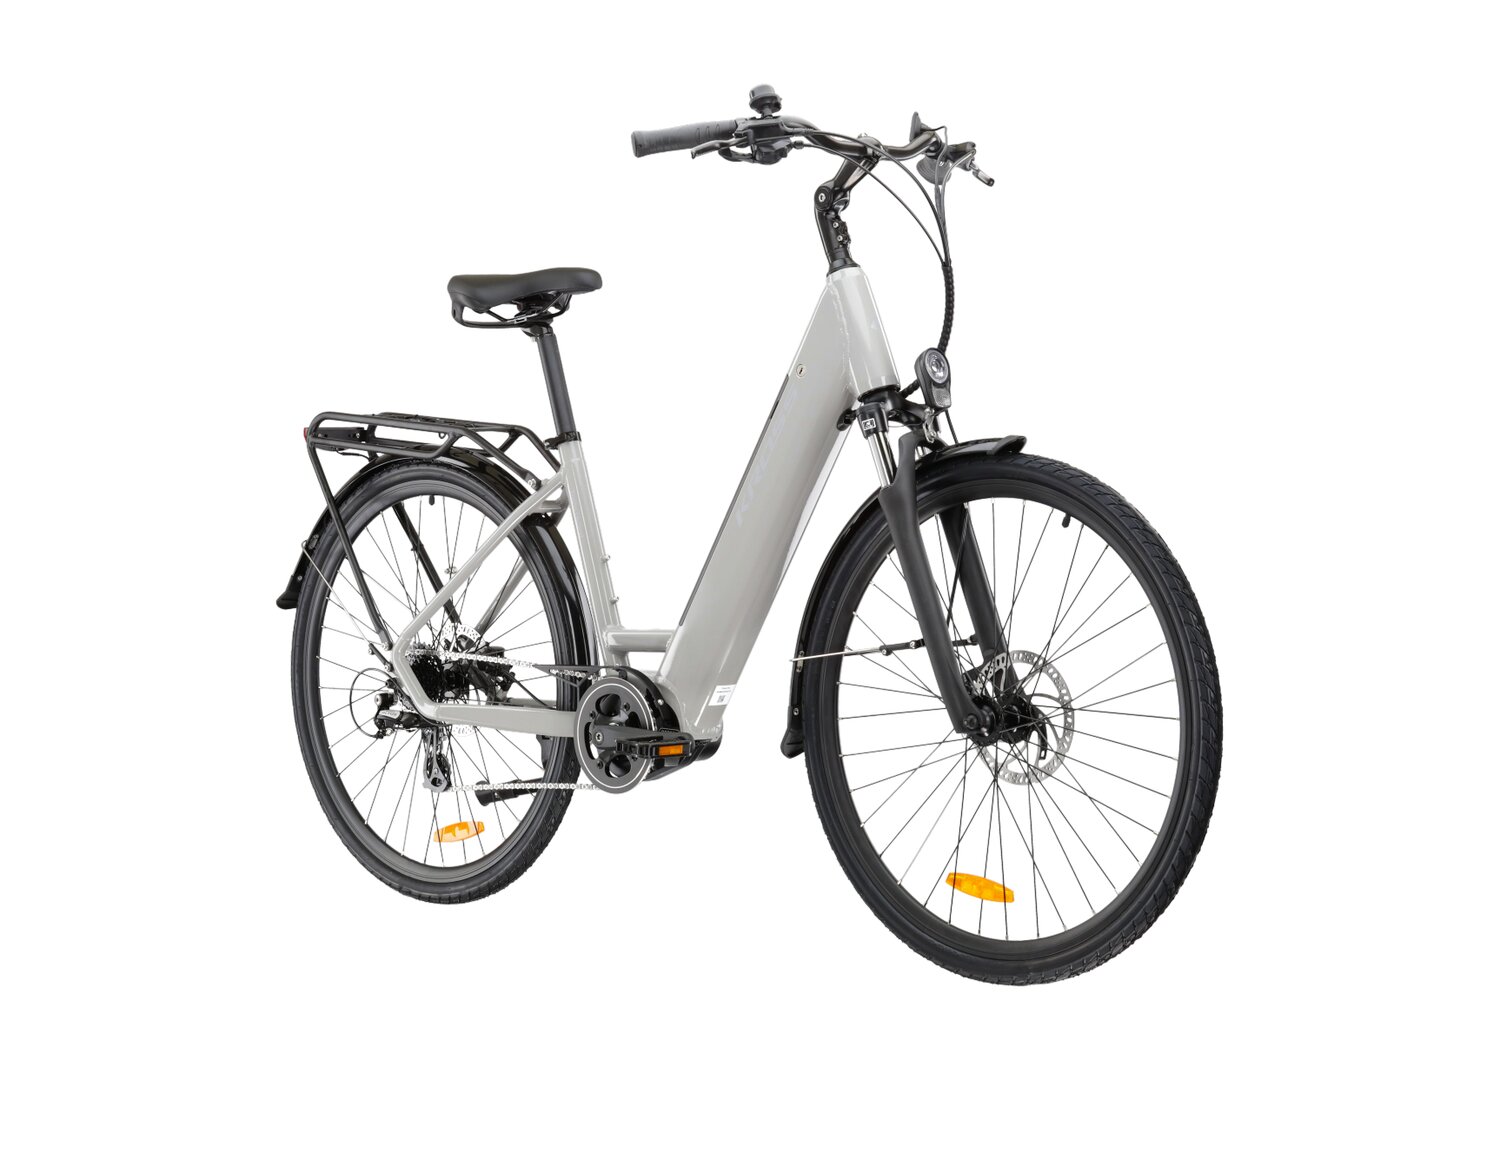  Elektryczny rower trekkingowy KROSS Trans Hybrid LS 2.0 518 Wh na aluminiowej ramie w kolorze szarym wyposażony w osprzęt Shimano i napęd elektryczny Bafang